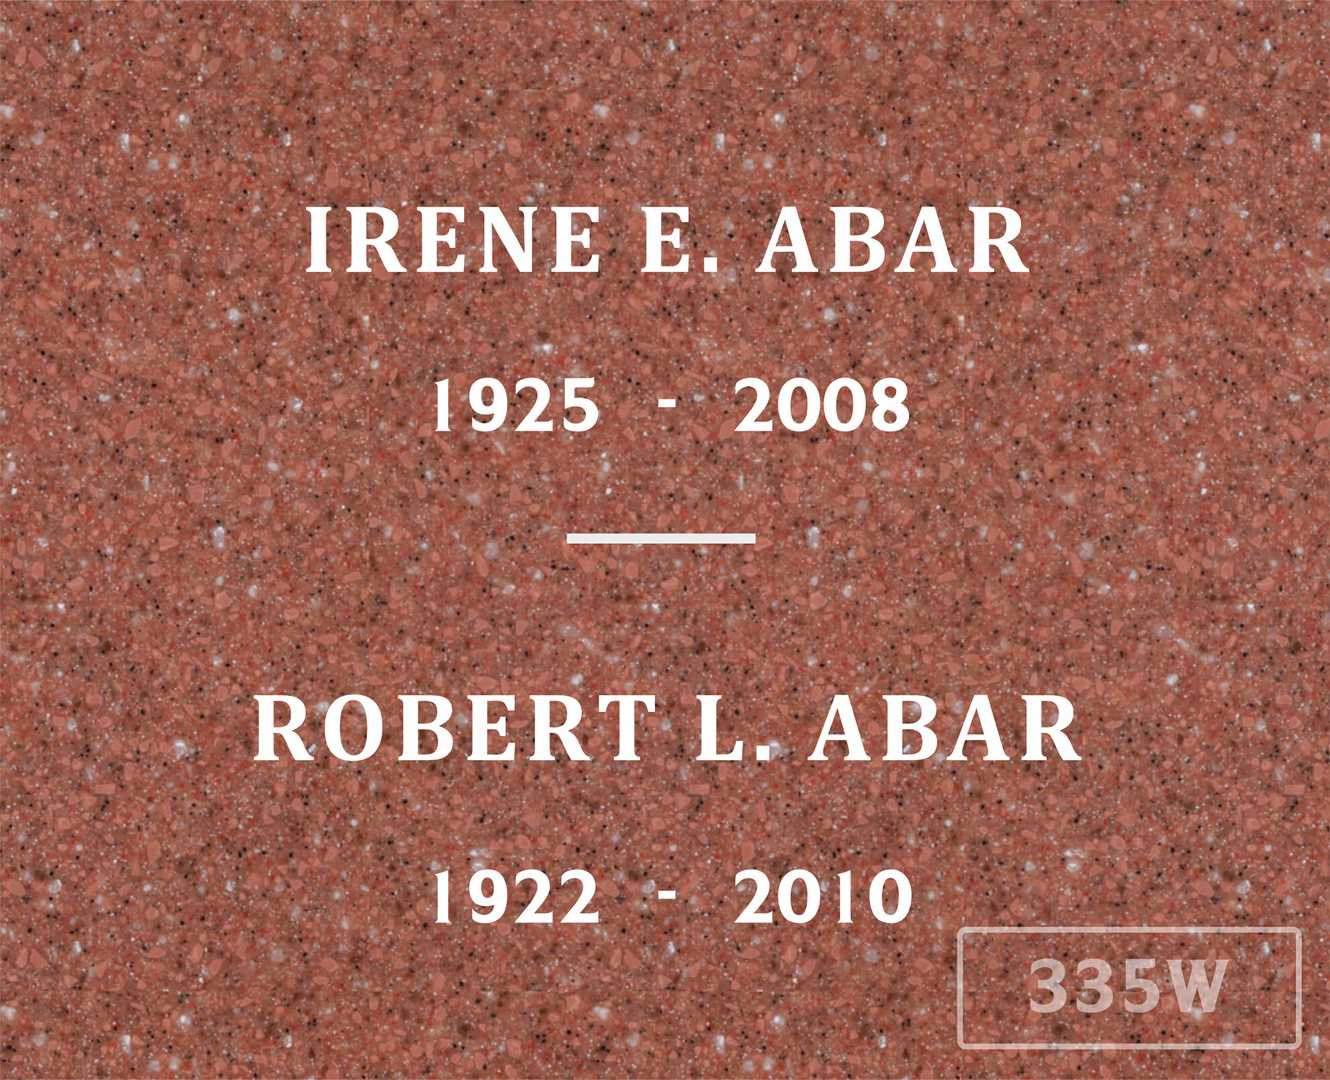 Irene E. Abar's grave